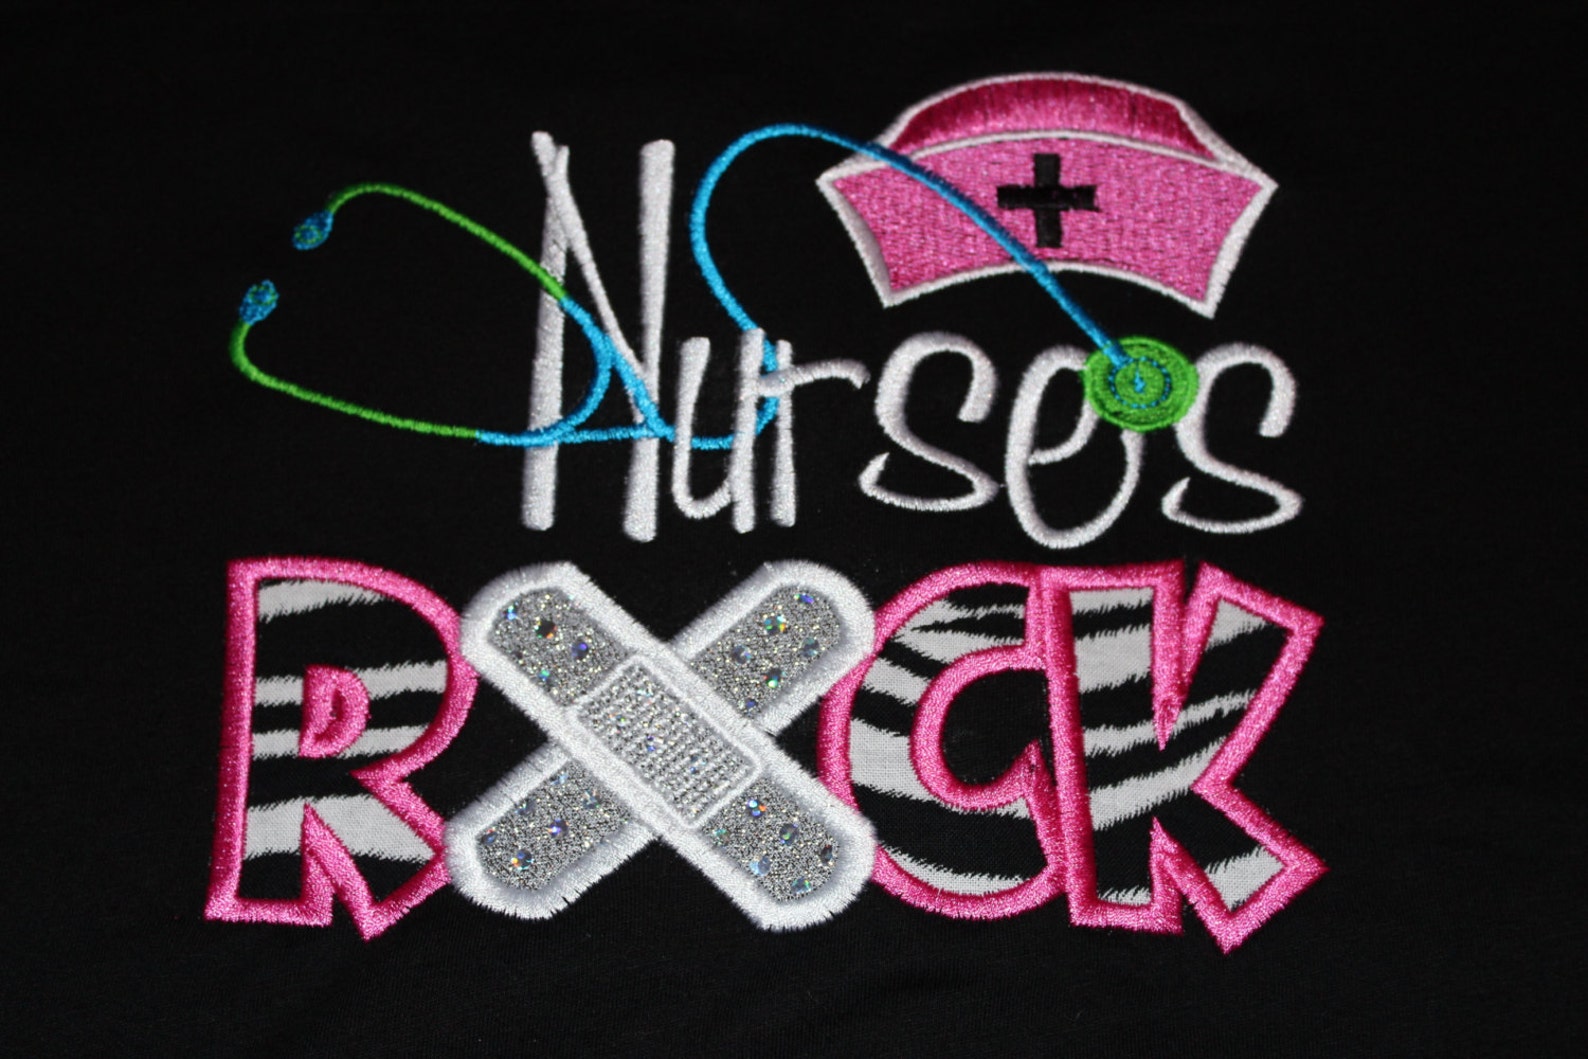 School Nurses Rock Or Just Nurses Rock Tshirt Etsy